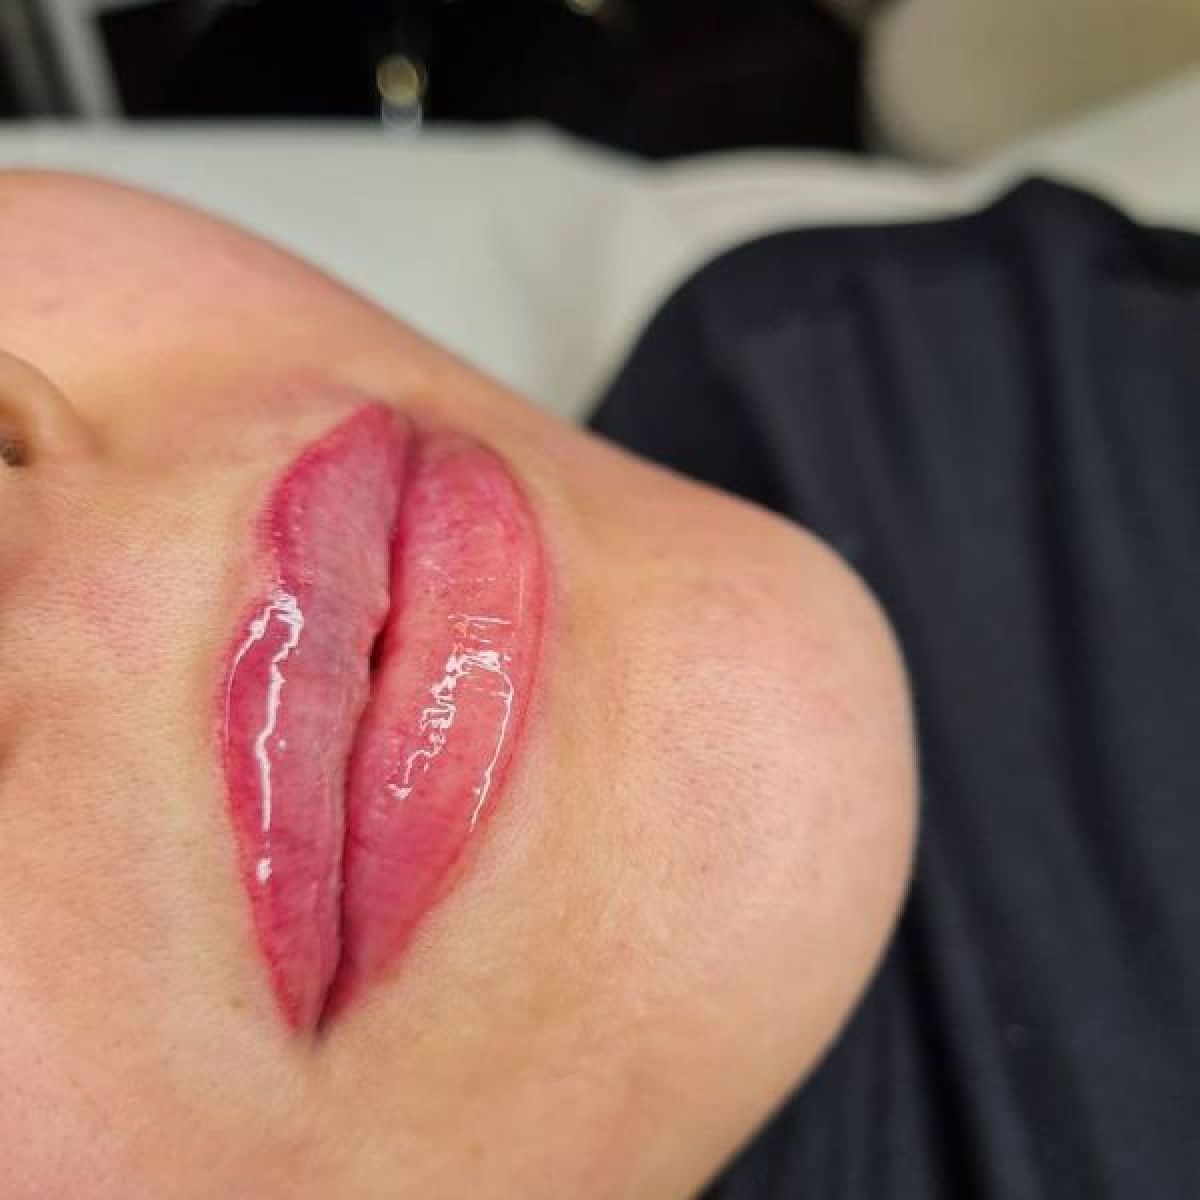 Maquillage permanent / Candy Lips à Marseille (13) Par Radia - Estheca